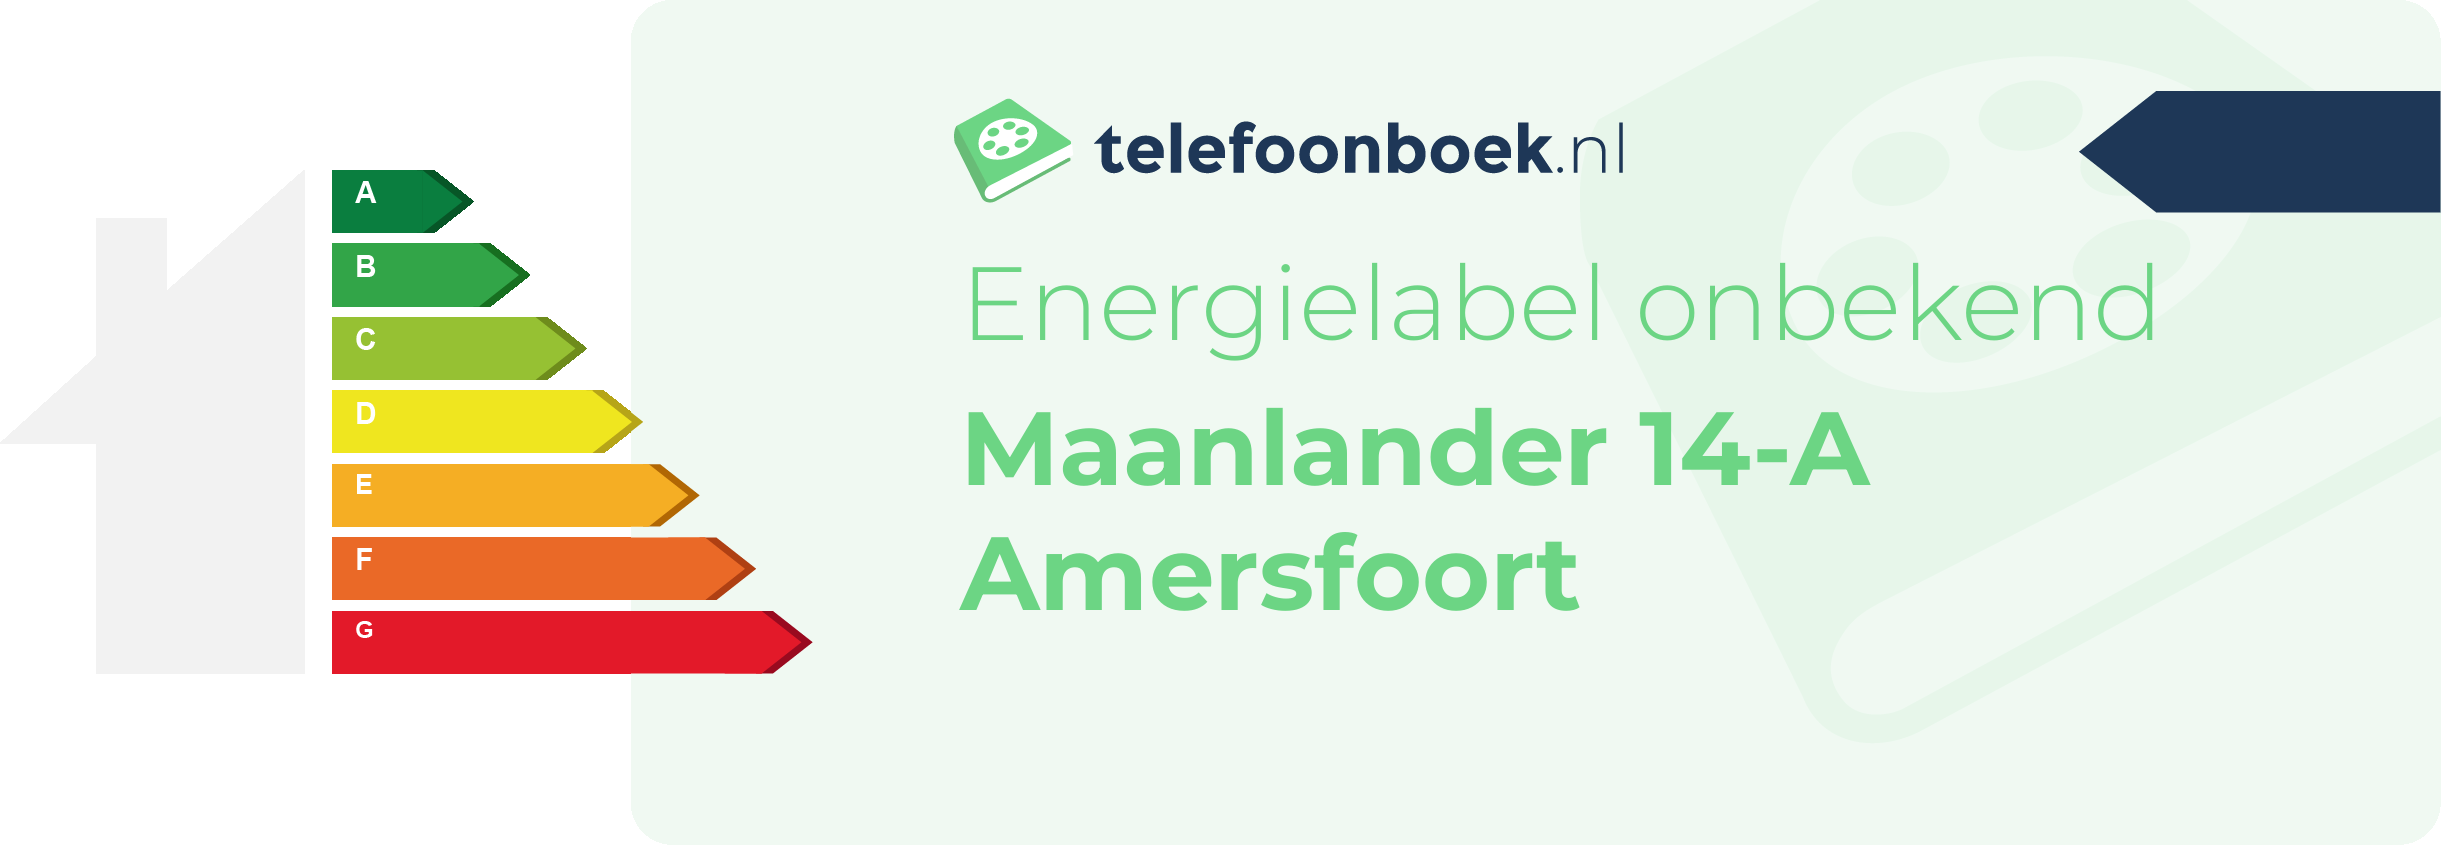 Energielabel Maanlander 14-A Amersfoort